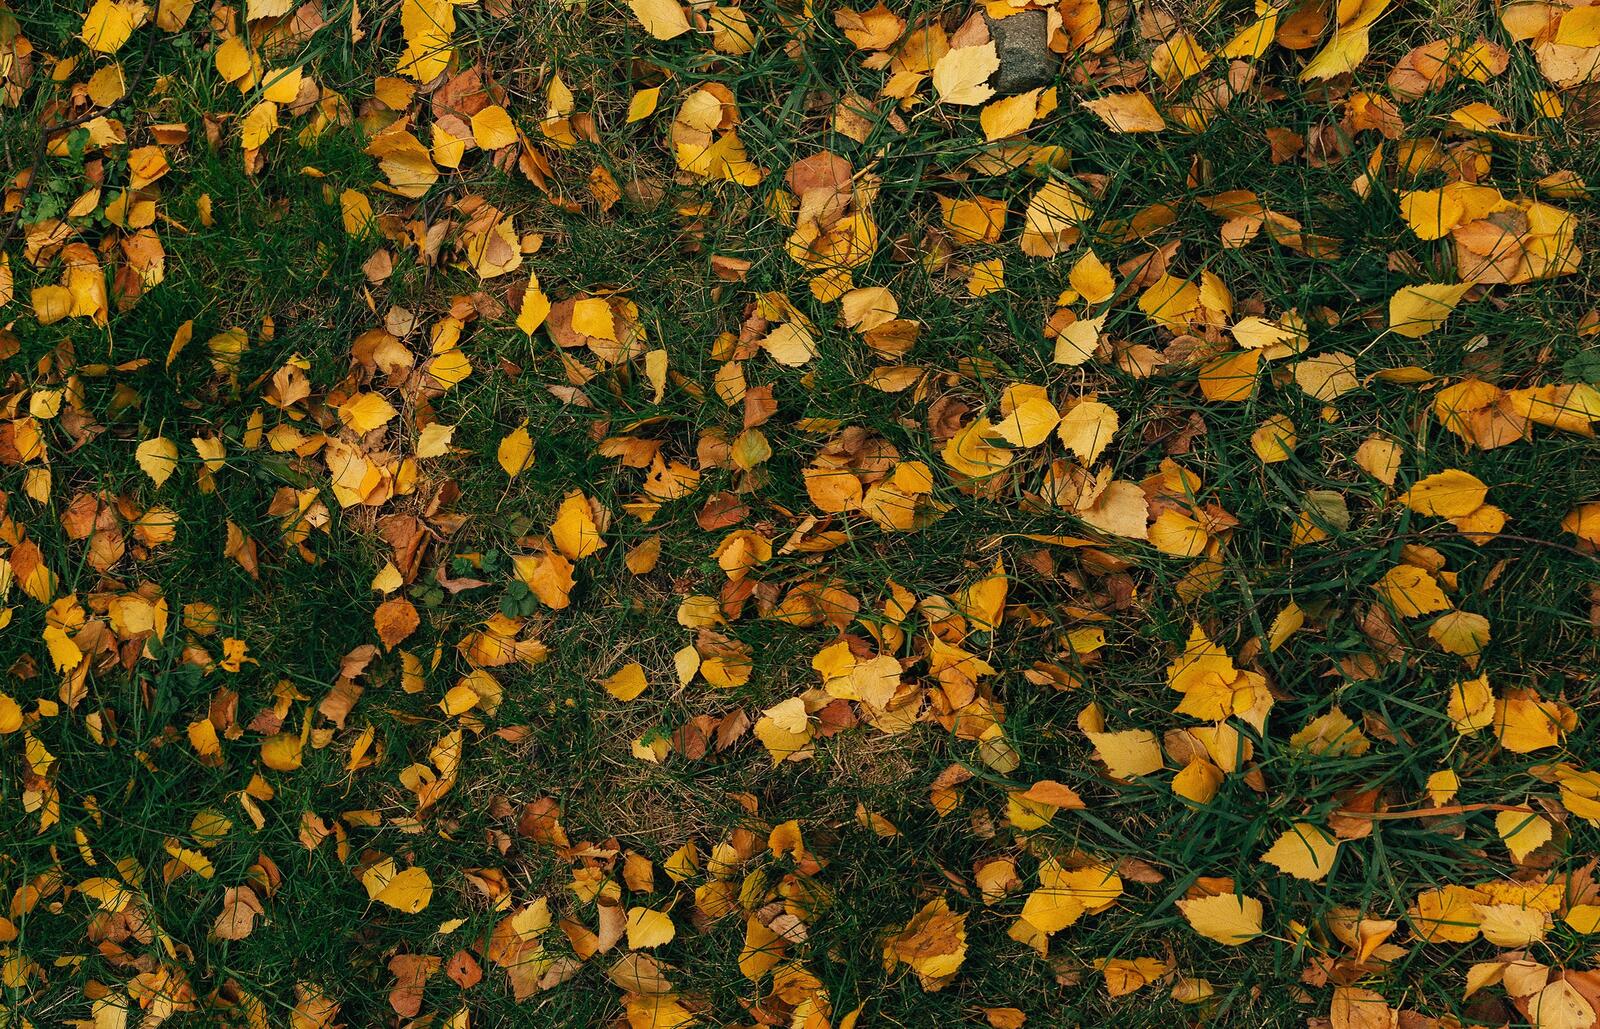 Бесплатное фото Зеленая трава с опавшими осенними листьями желтого цвета